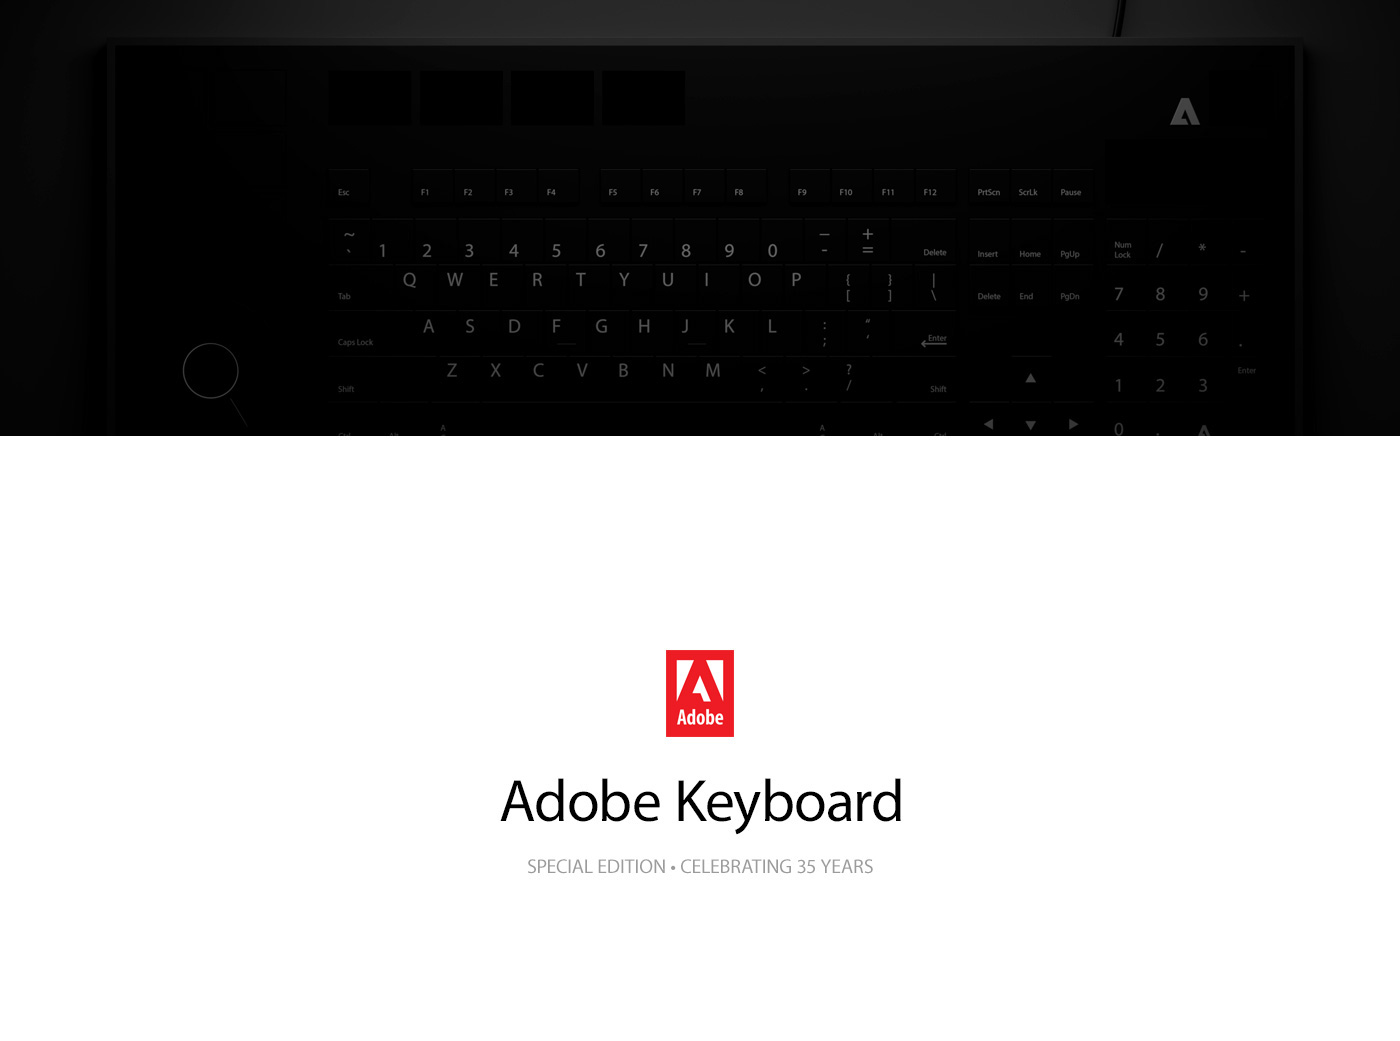 Dark mode screenss idea #292: Adobe Keyboard